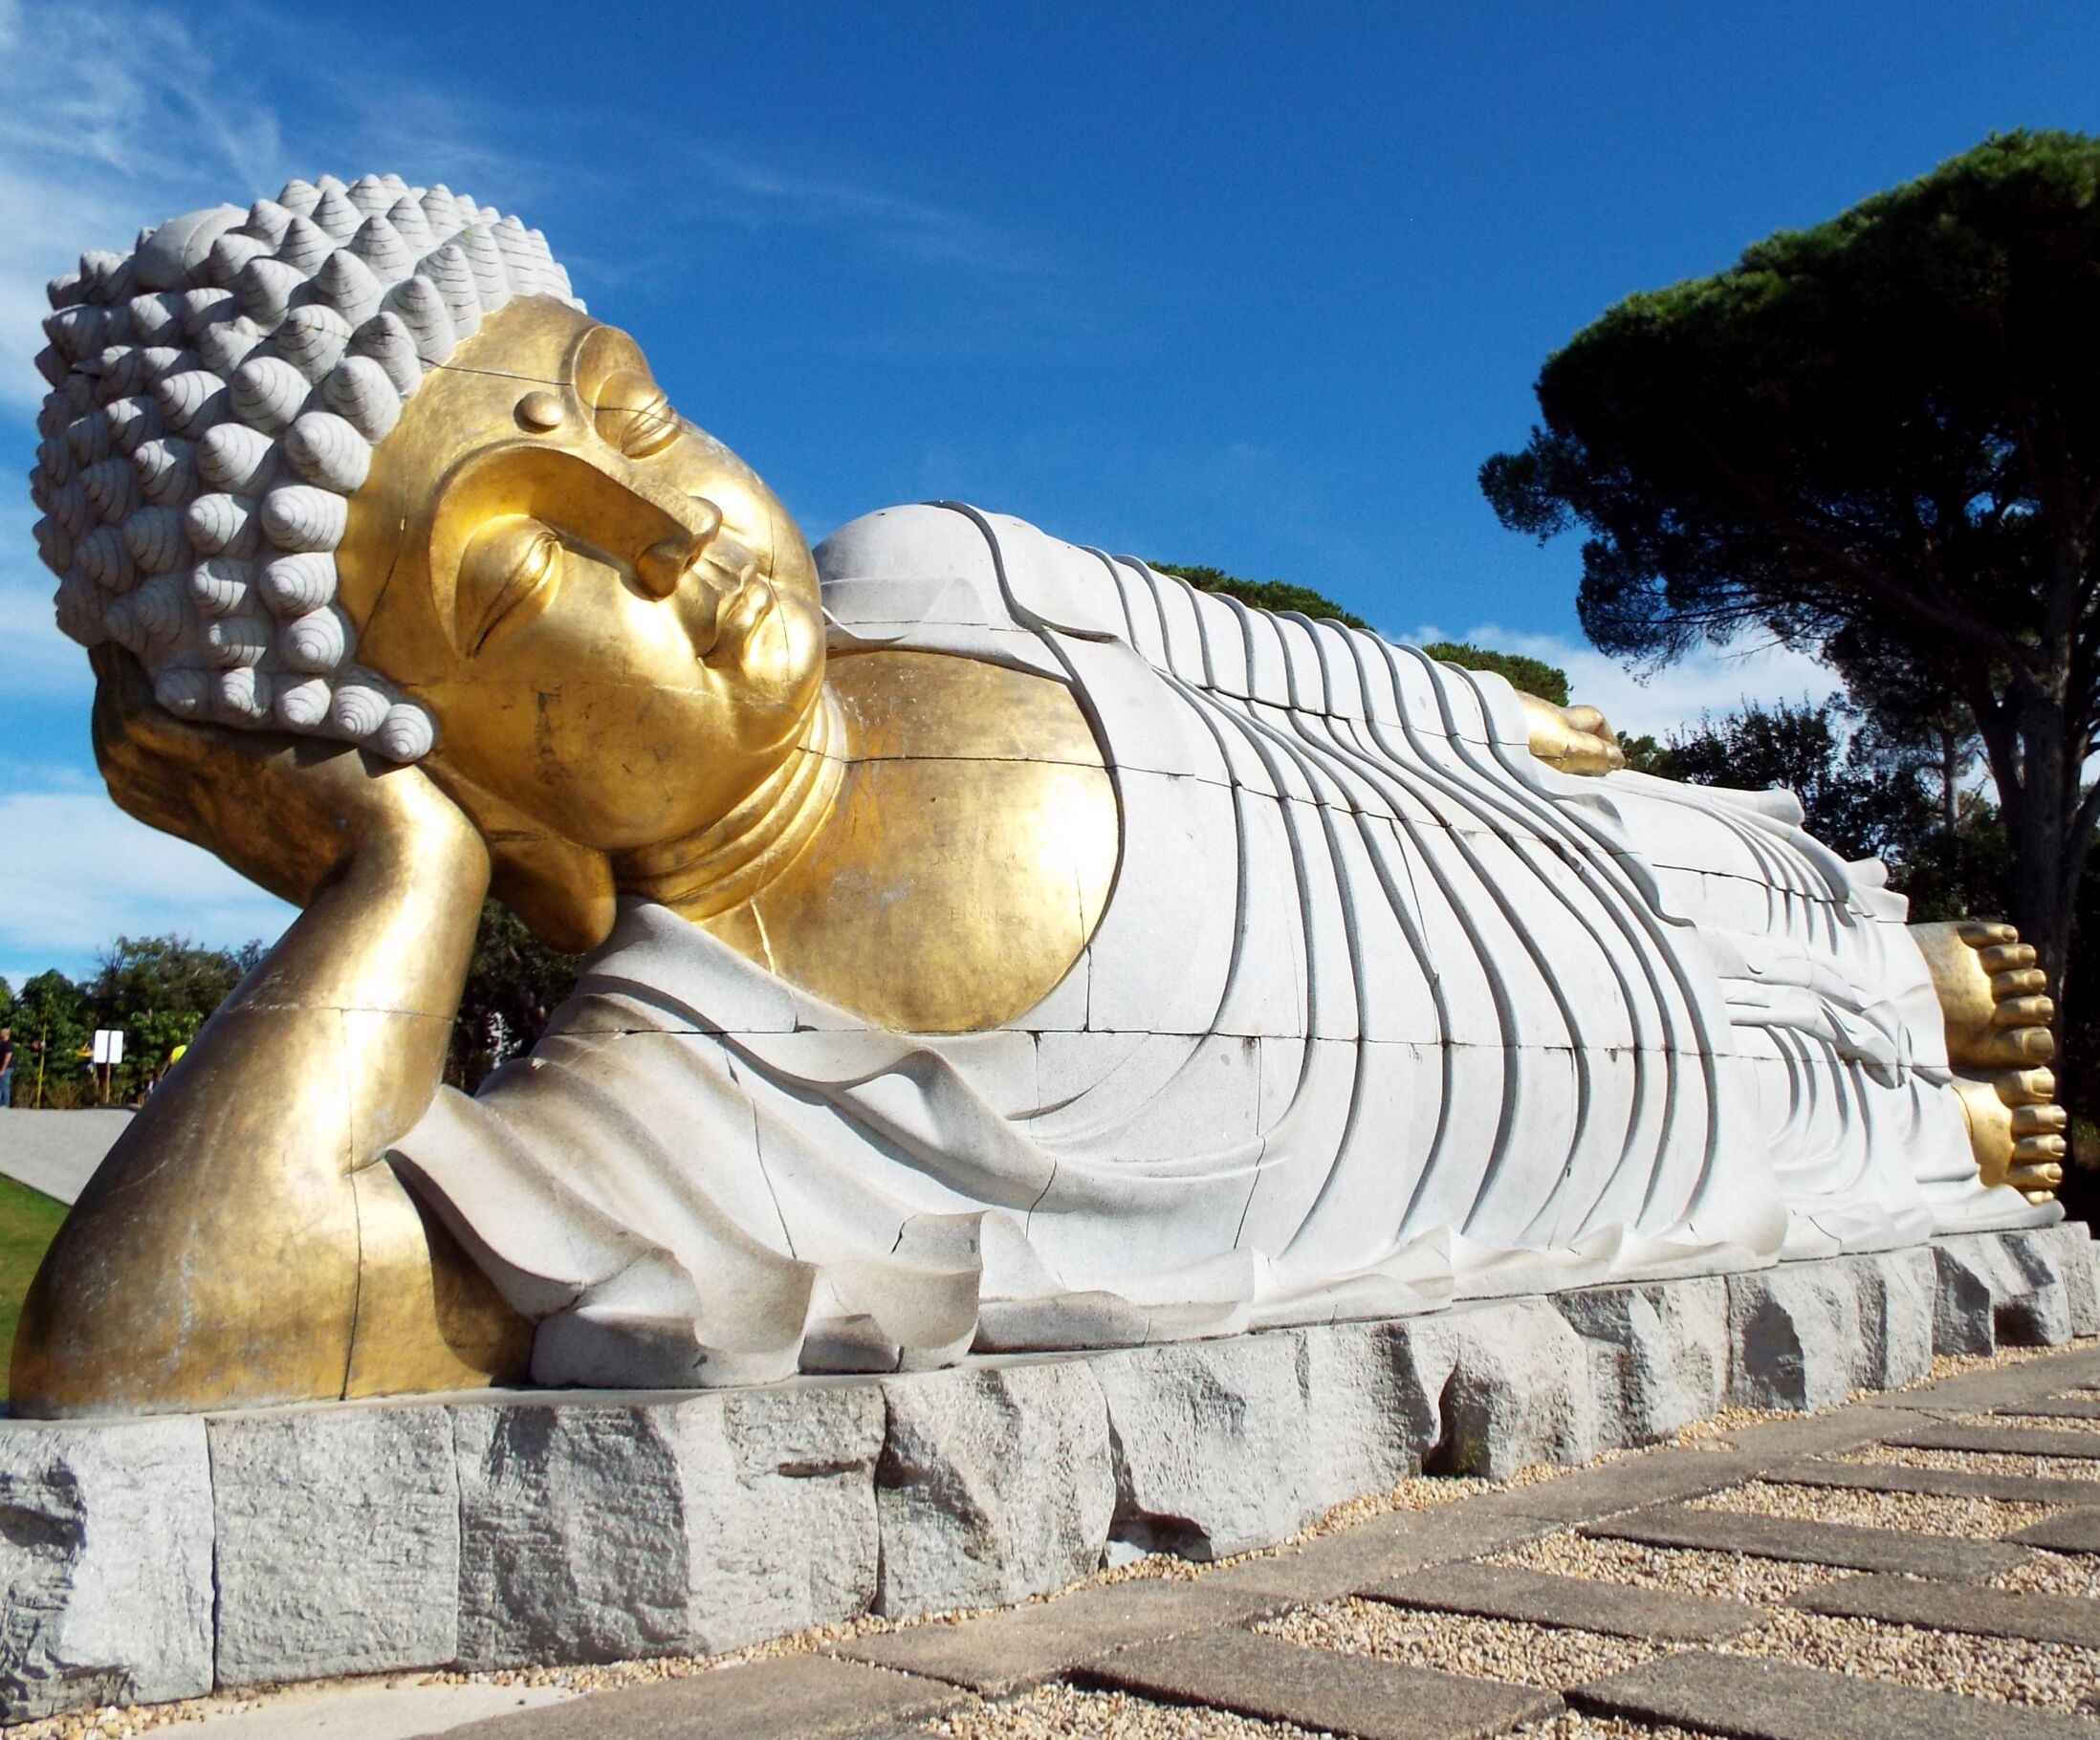 Bacalhôa Buddha Eden: Europe's largest eastern garden